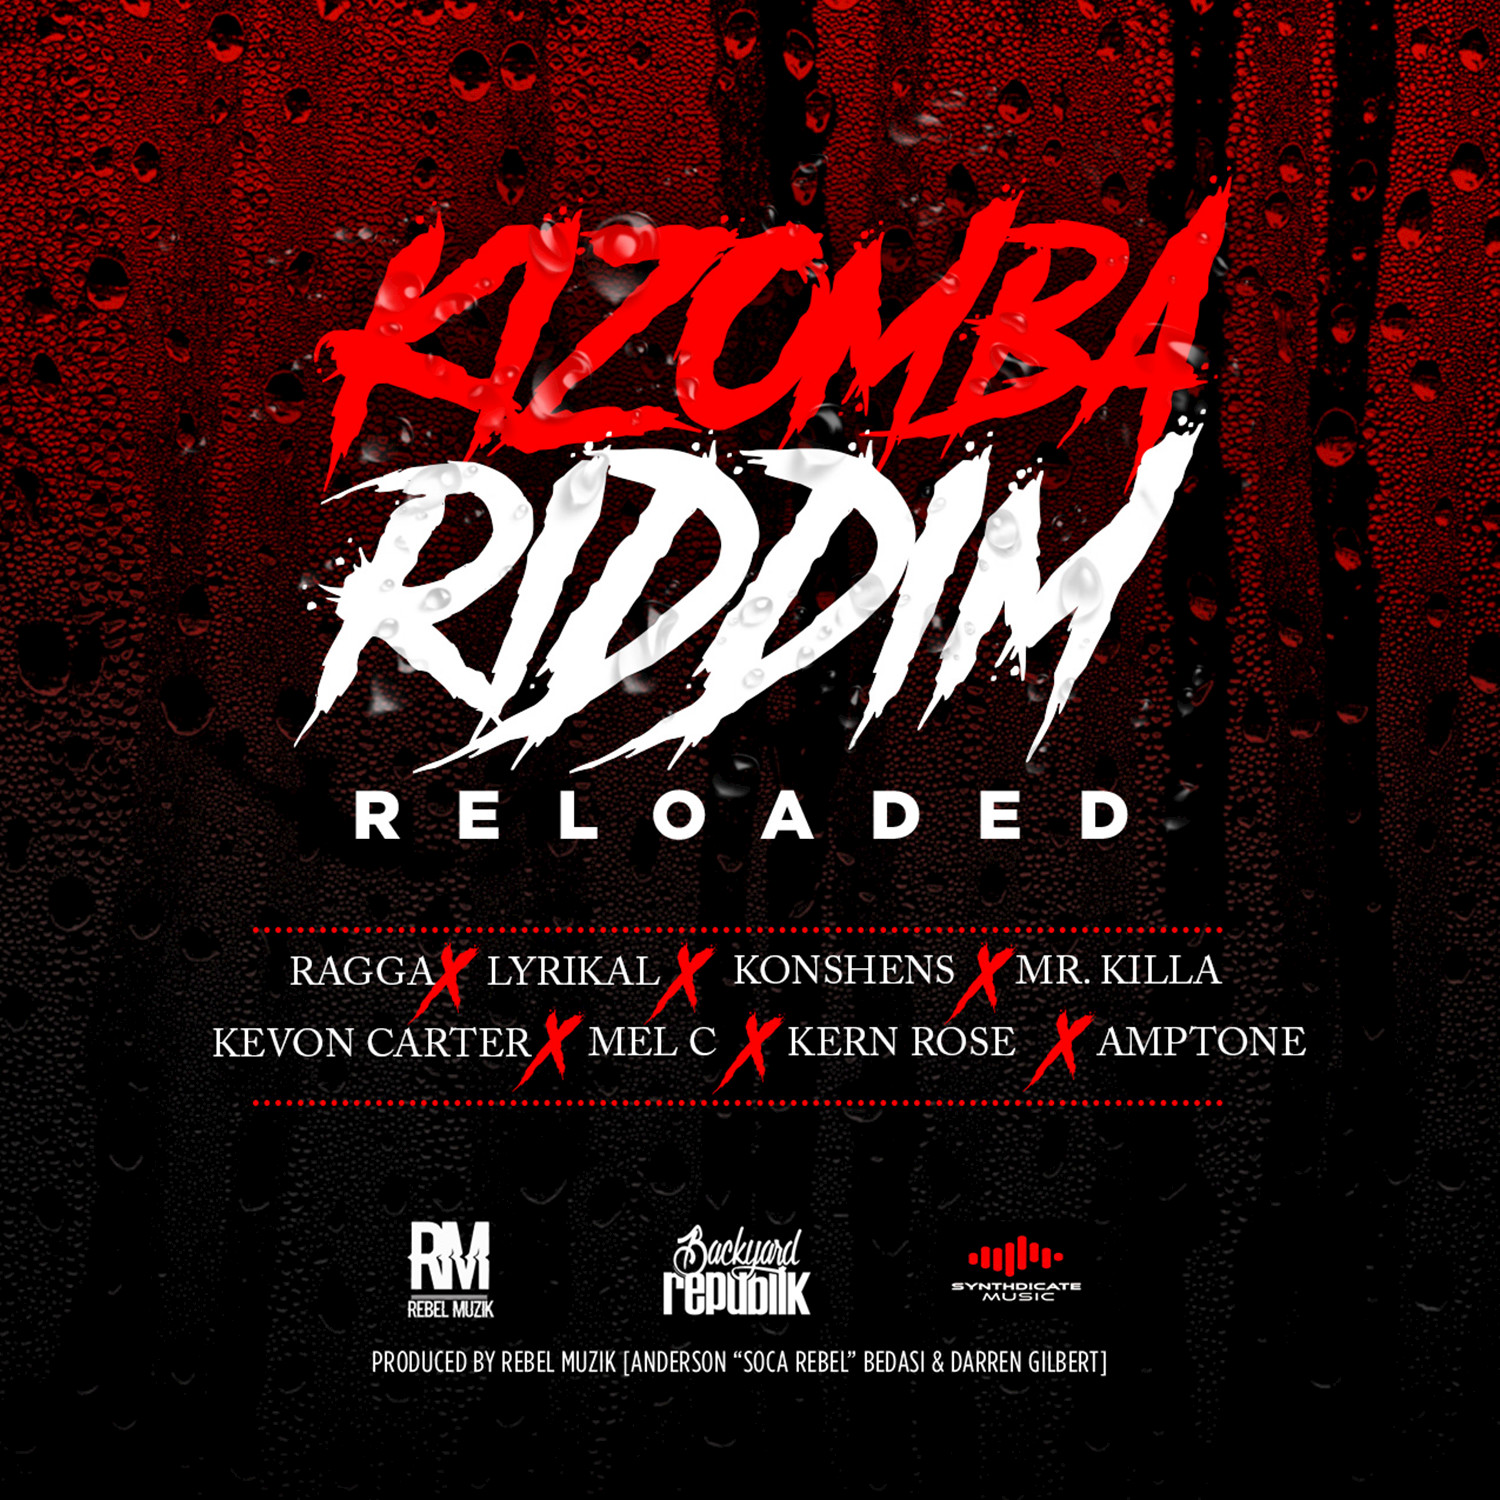 Kizomba Riddim Reloaded